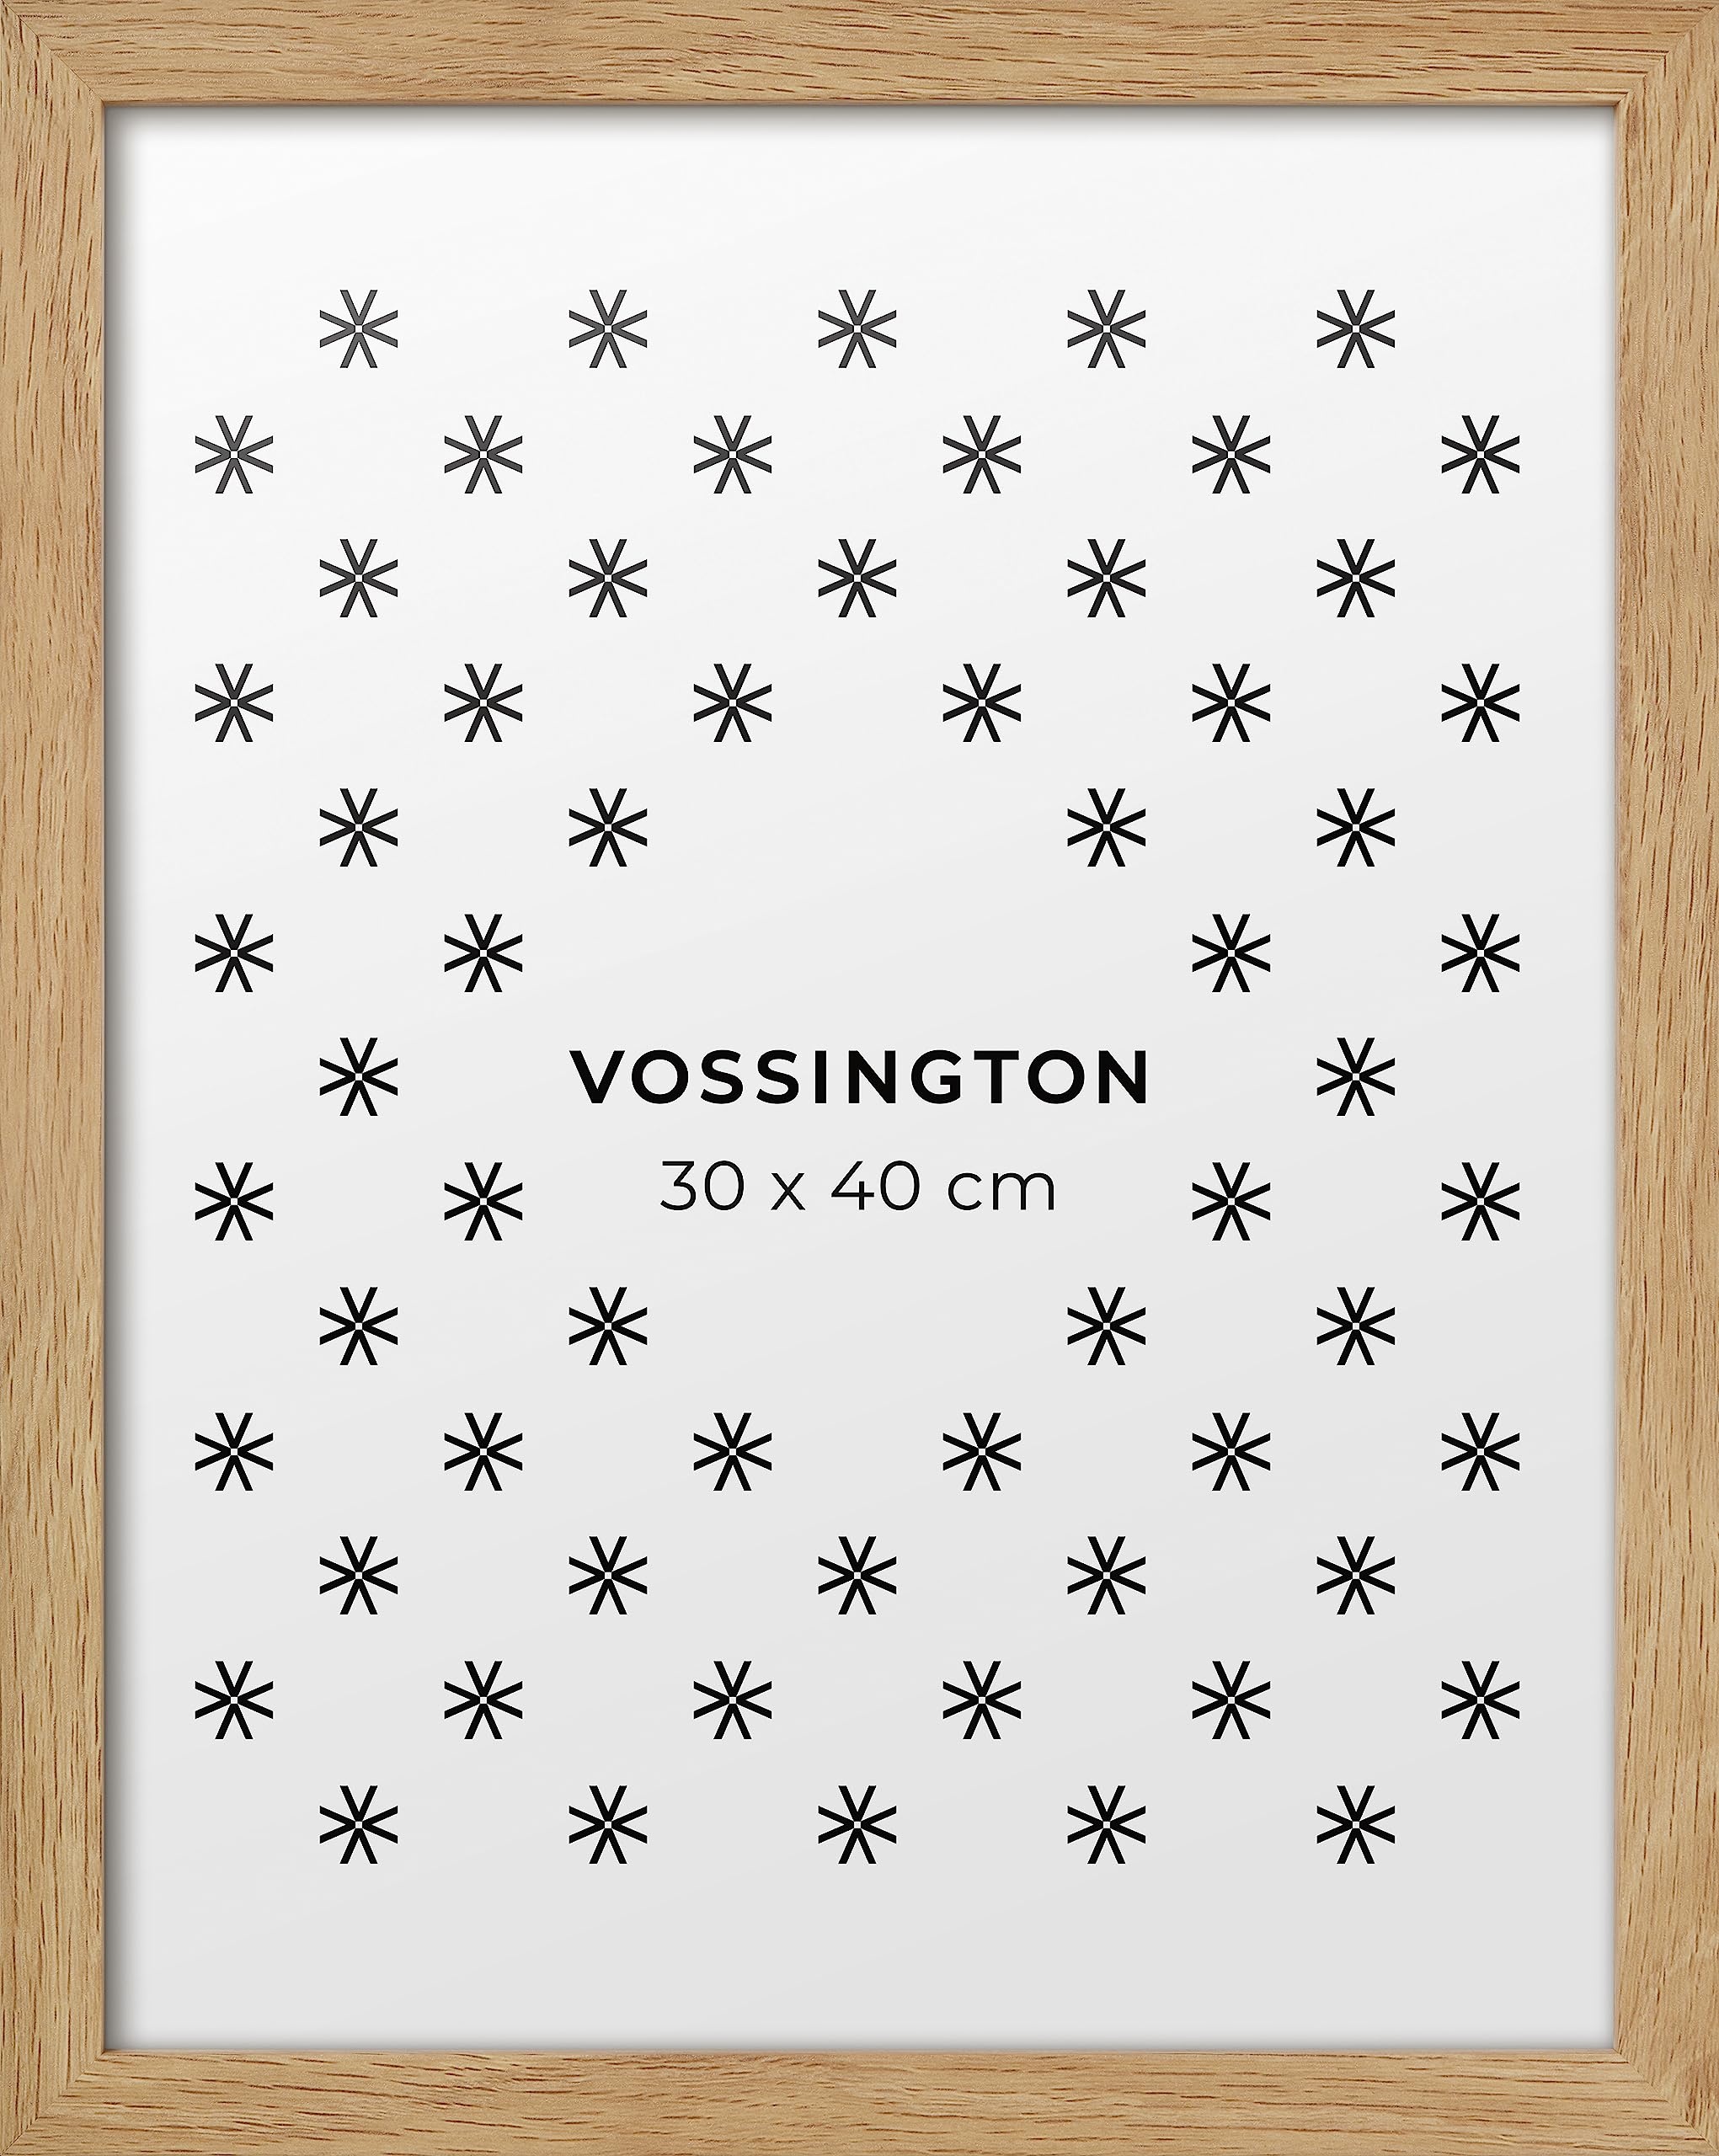 Vossington Bilderrahmen 30x40 Eiche - Holz (künstliche Holzmaserung) - Modernes, klassisches Design - Rahmen für 1 Bild, Foto, Poster oder Puzzle im Format 30 x 40 cm (40x30 cm)